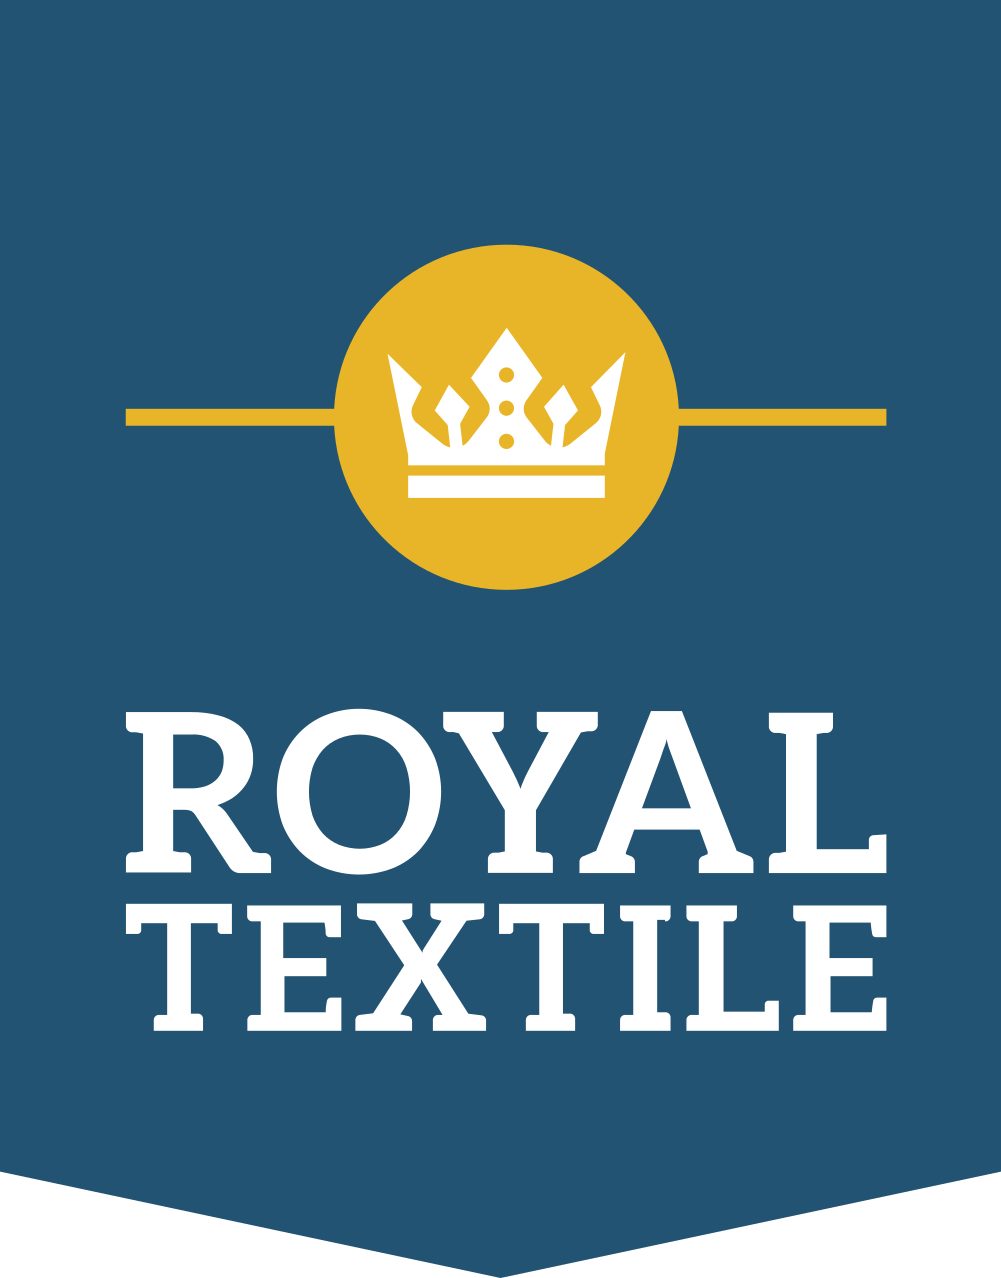 Royal Textile